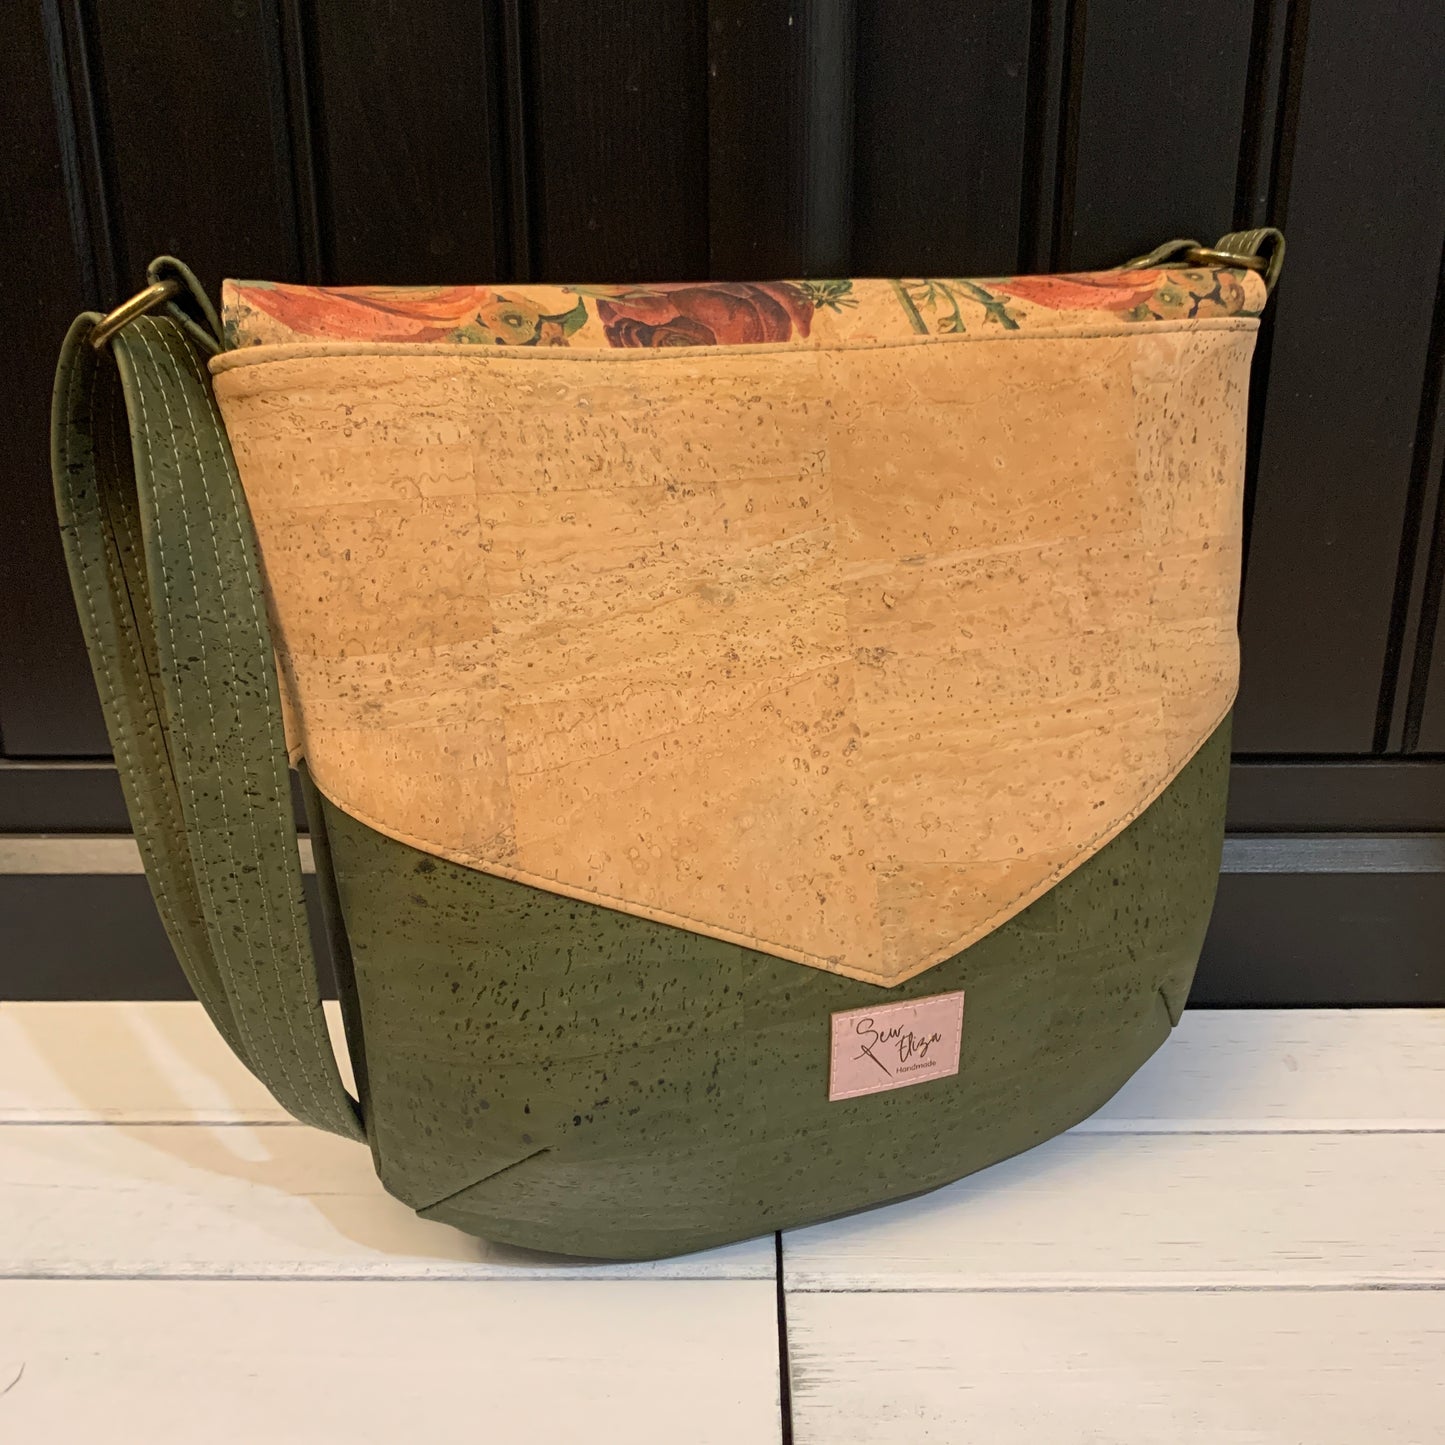 Vara Crossbody Bag - Army Green, Natural and Rose Print Cork